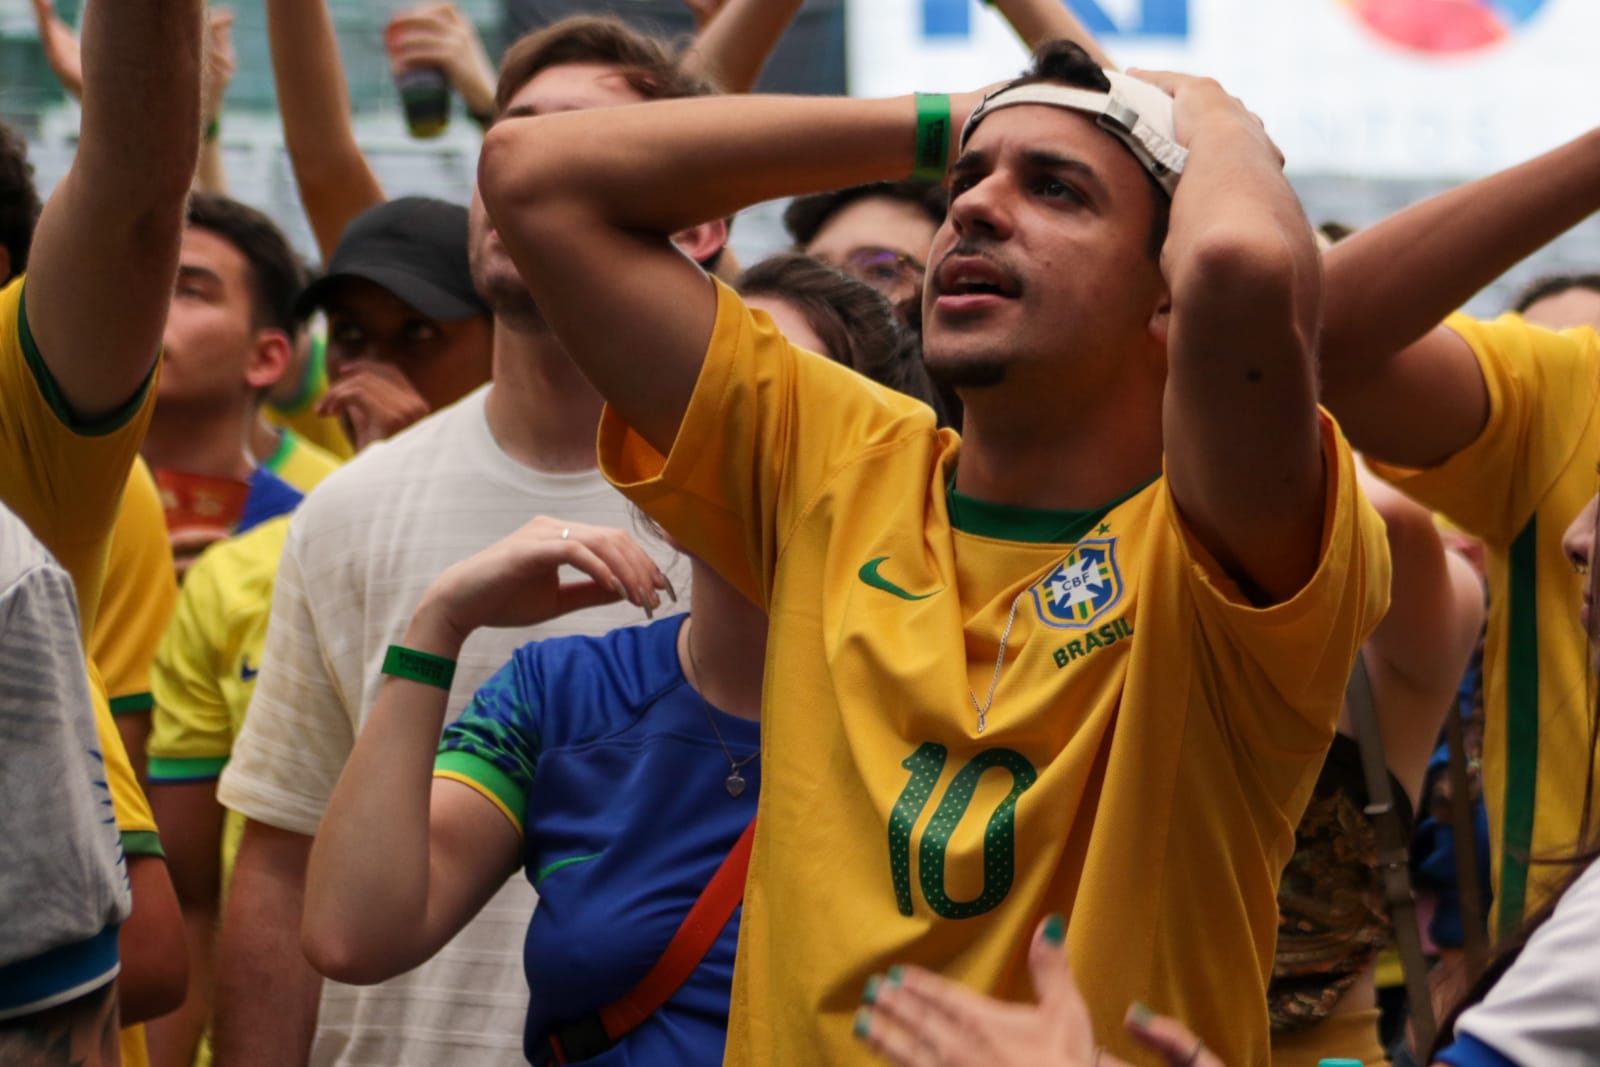 Tristeza permanece na chegada de seleção ao Brasil